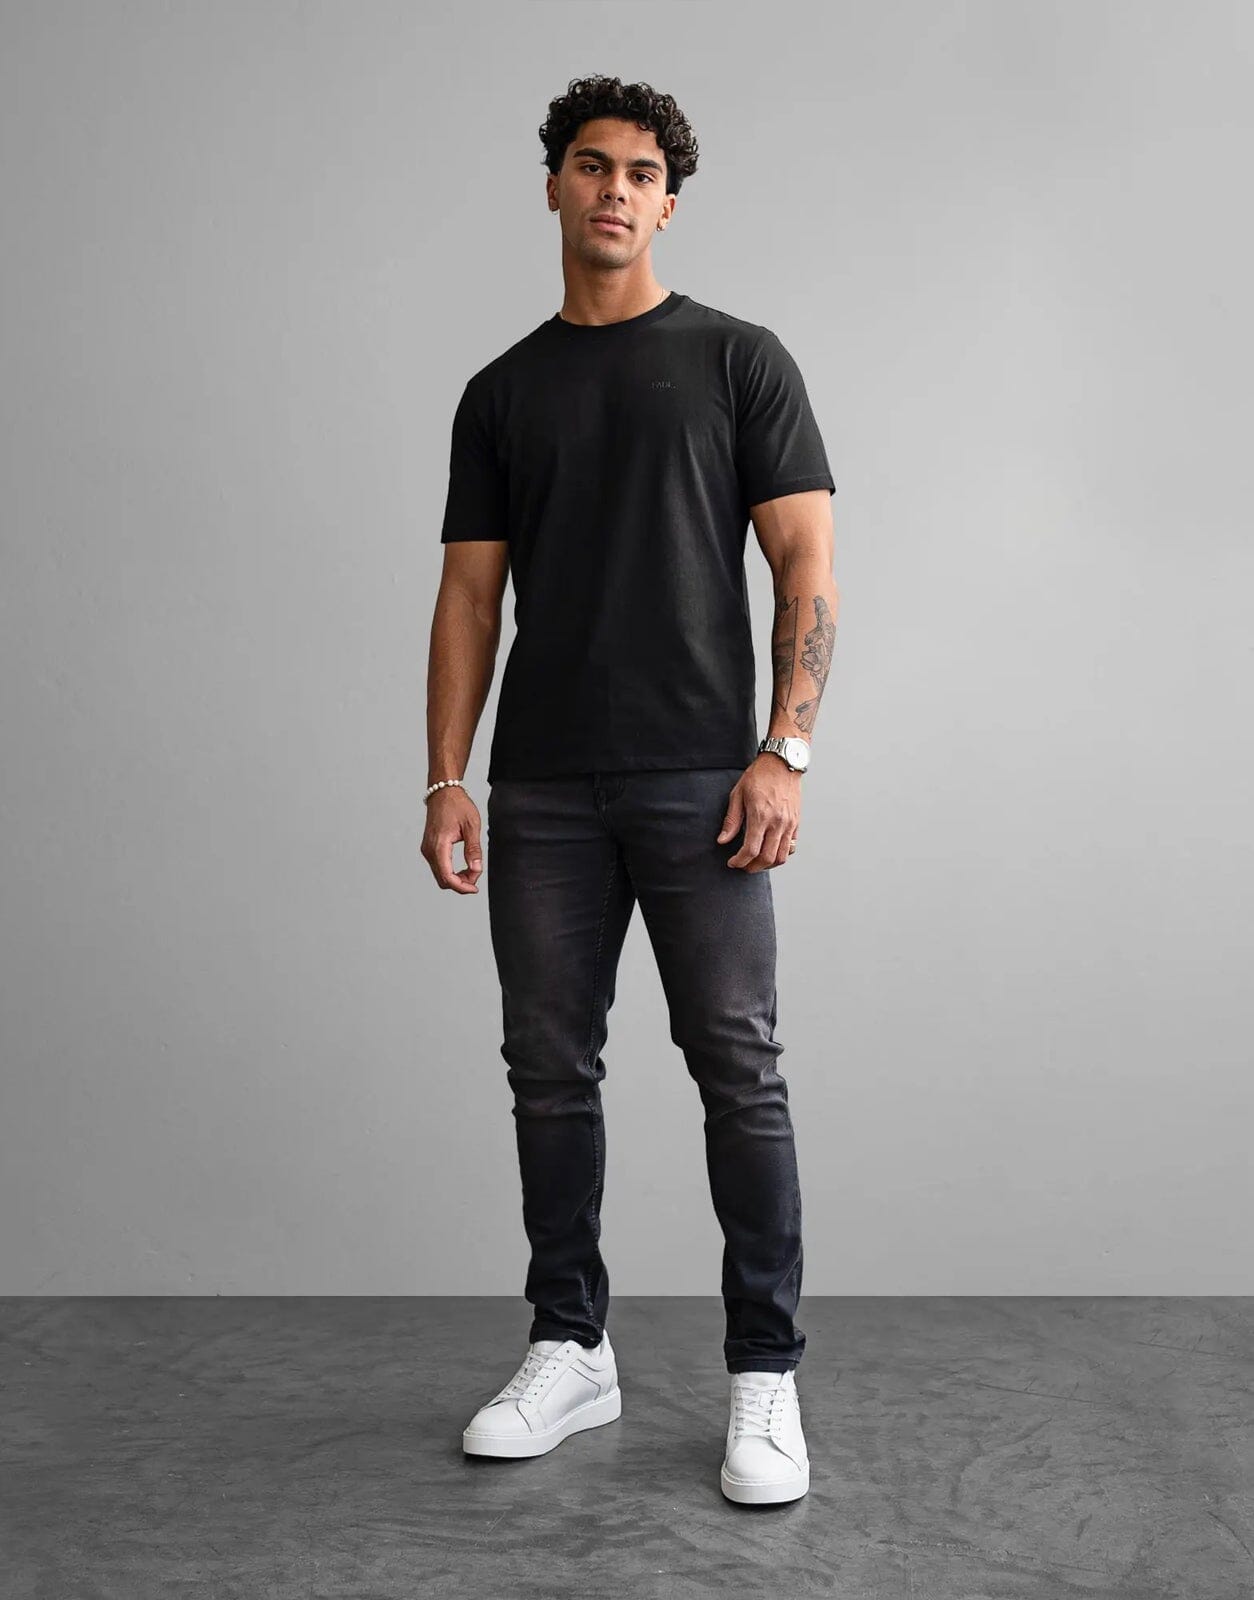 Fade Essential Black T-Shirt - Subwear